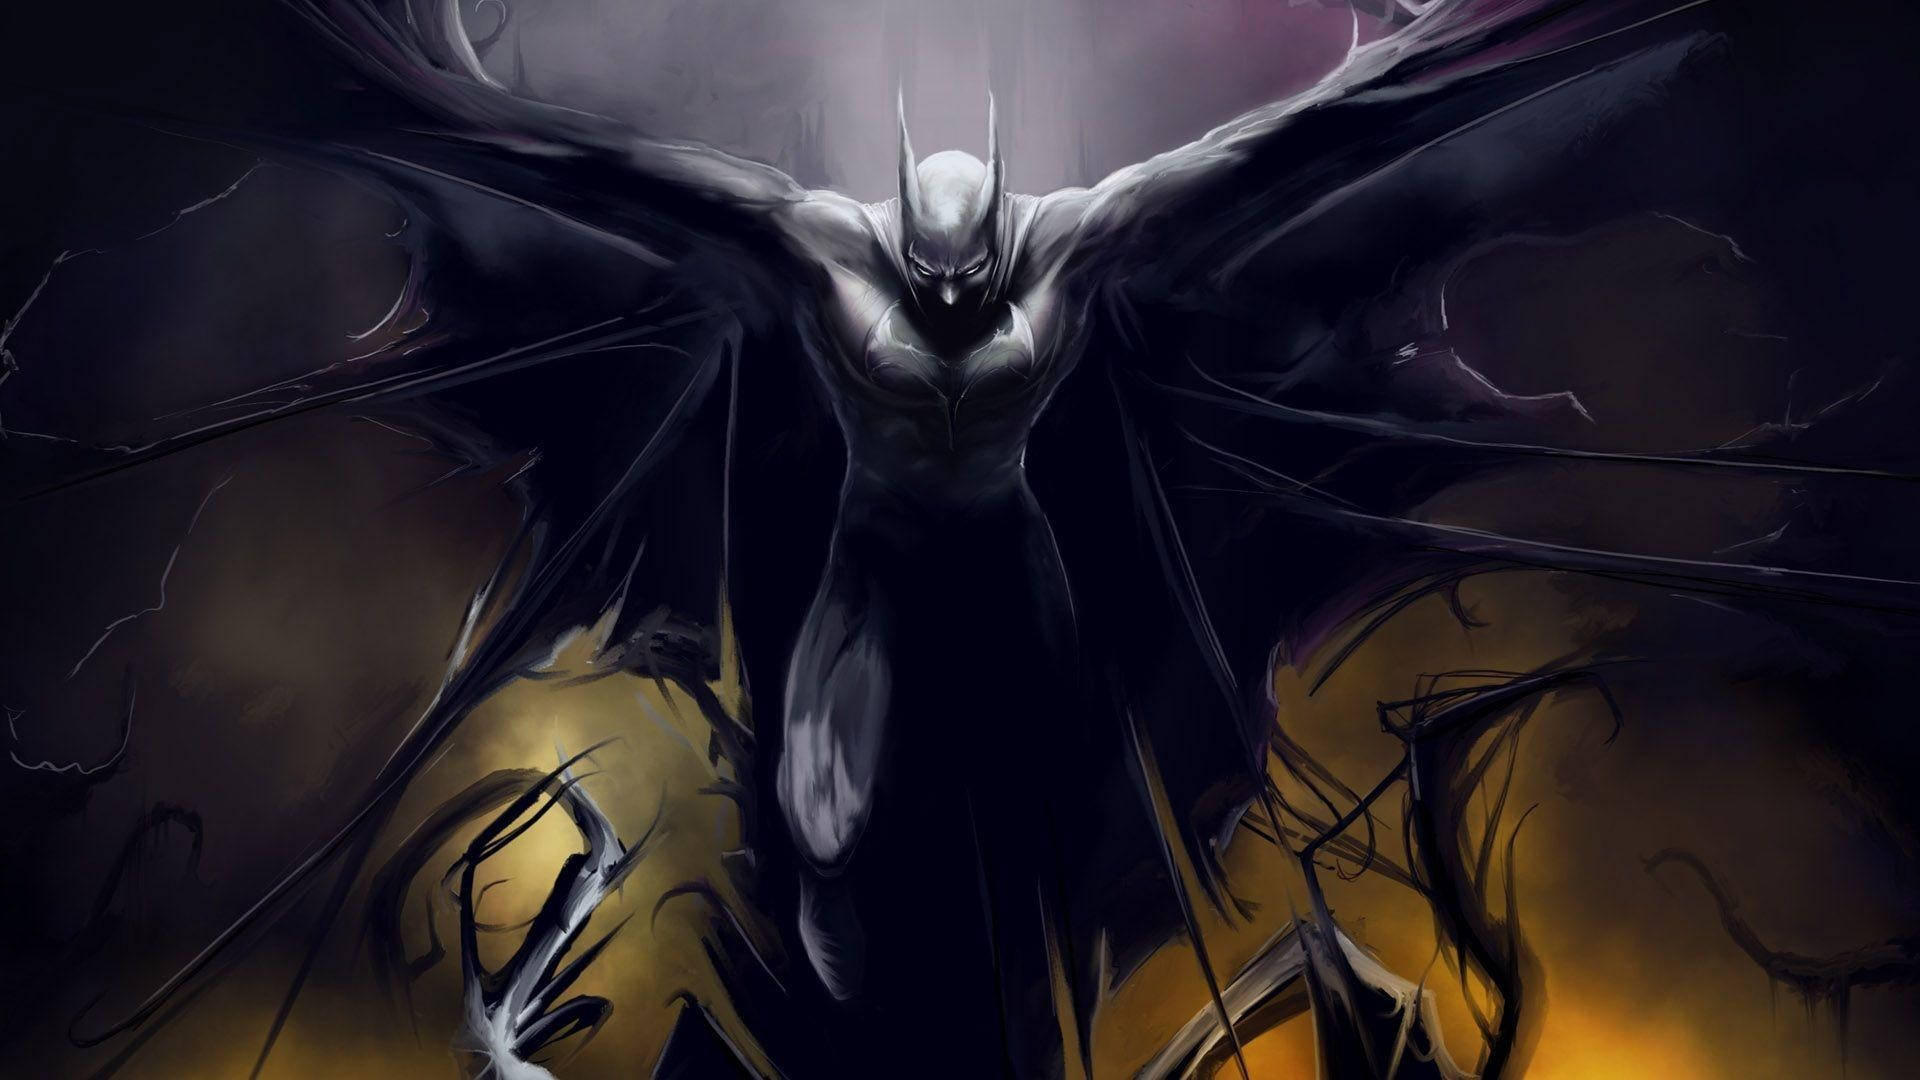 Sick Batman Wings Background